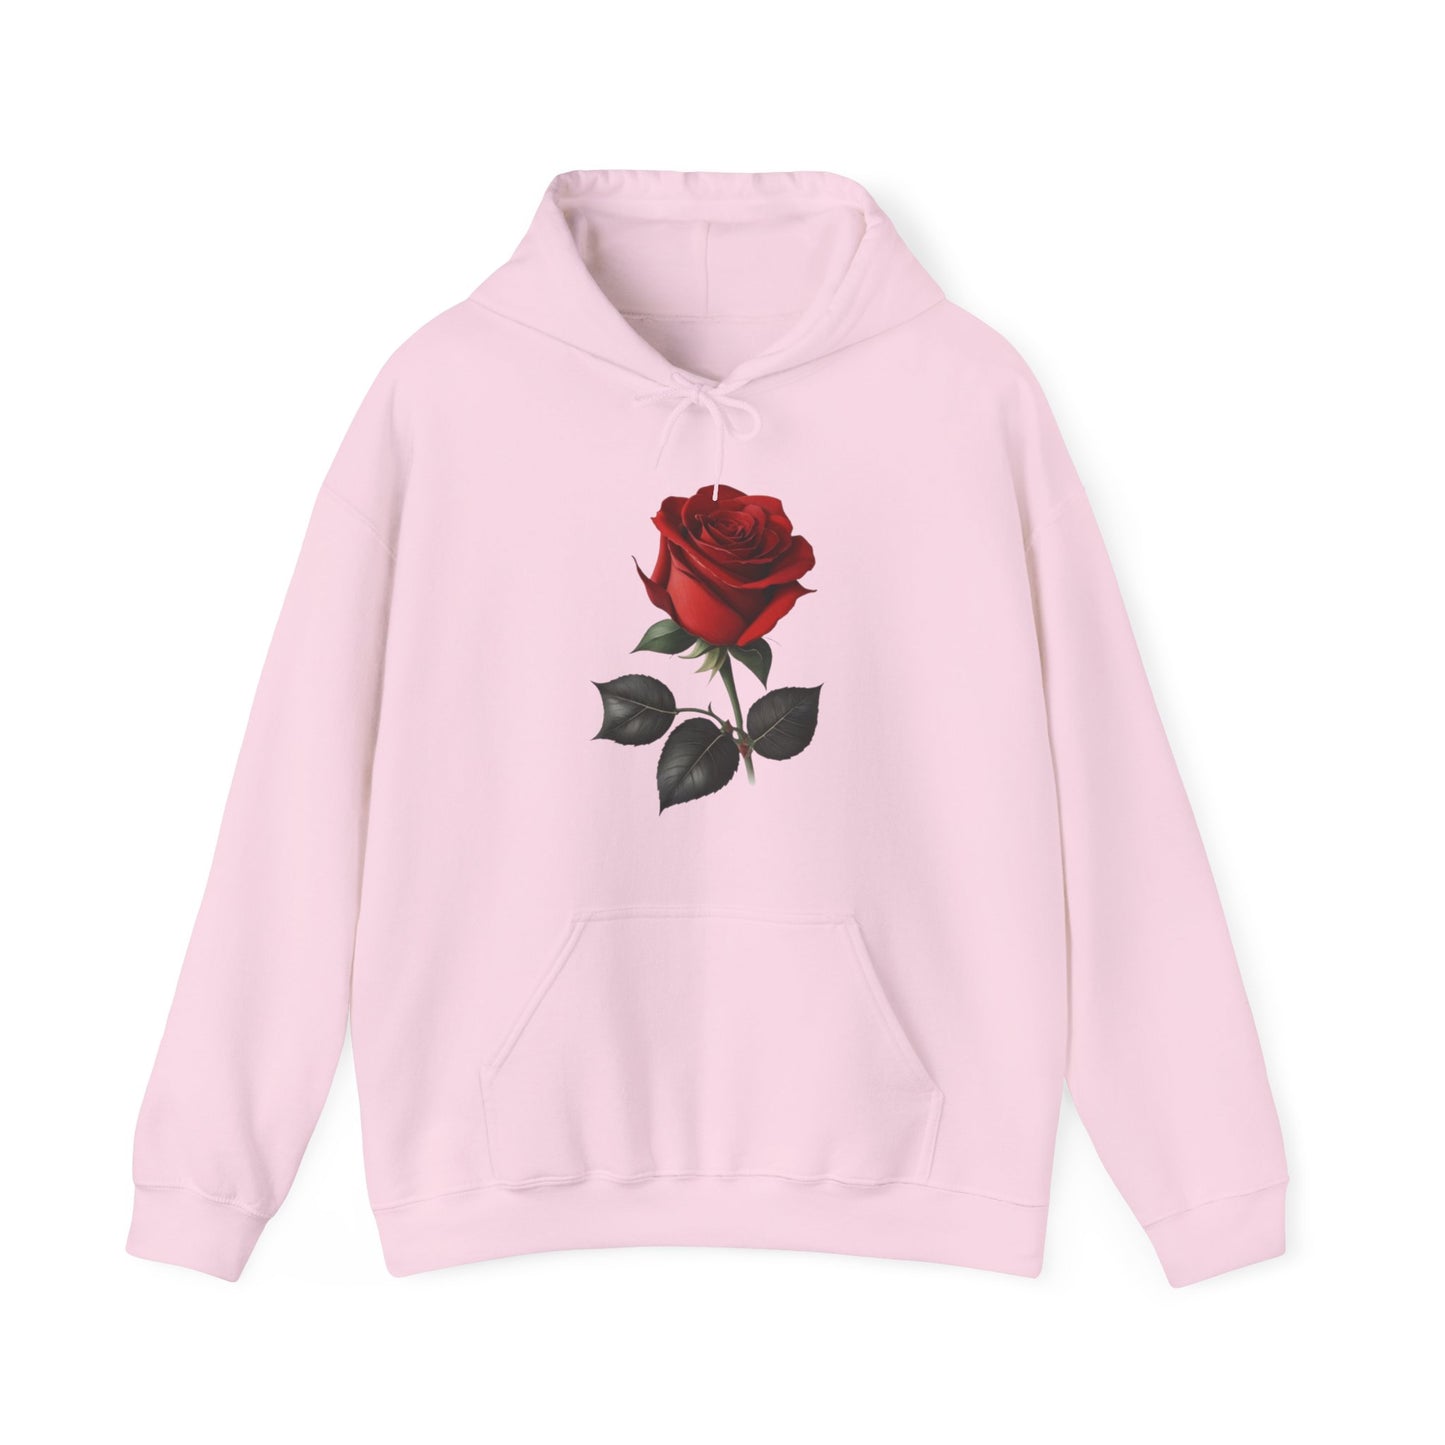 Red Rose - Unisex Hooded Sweatshirt